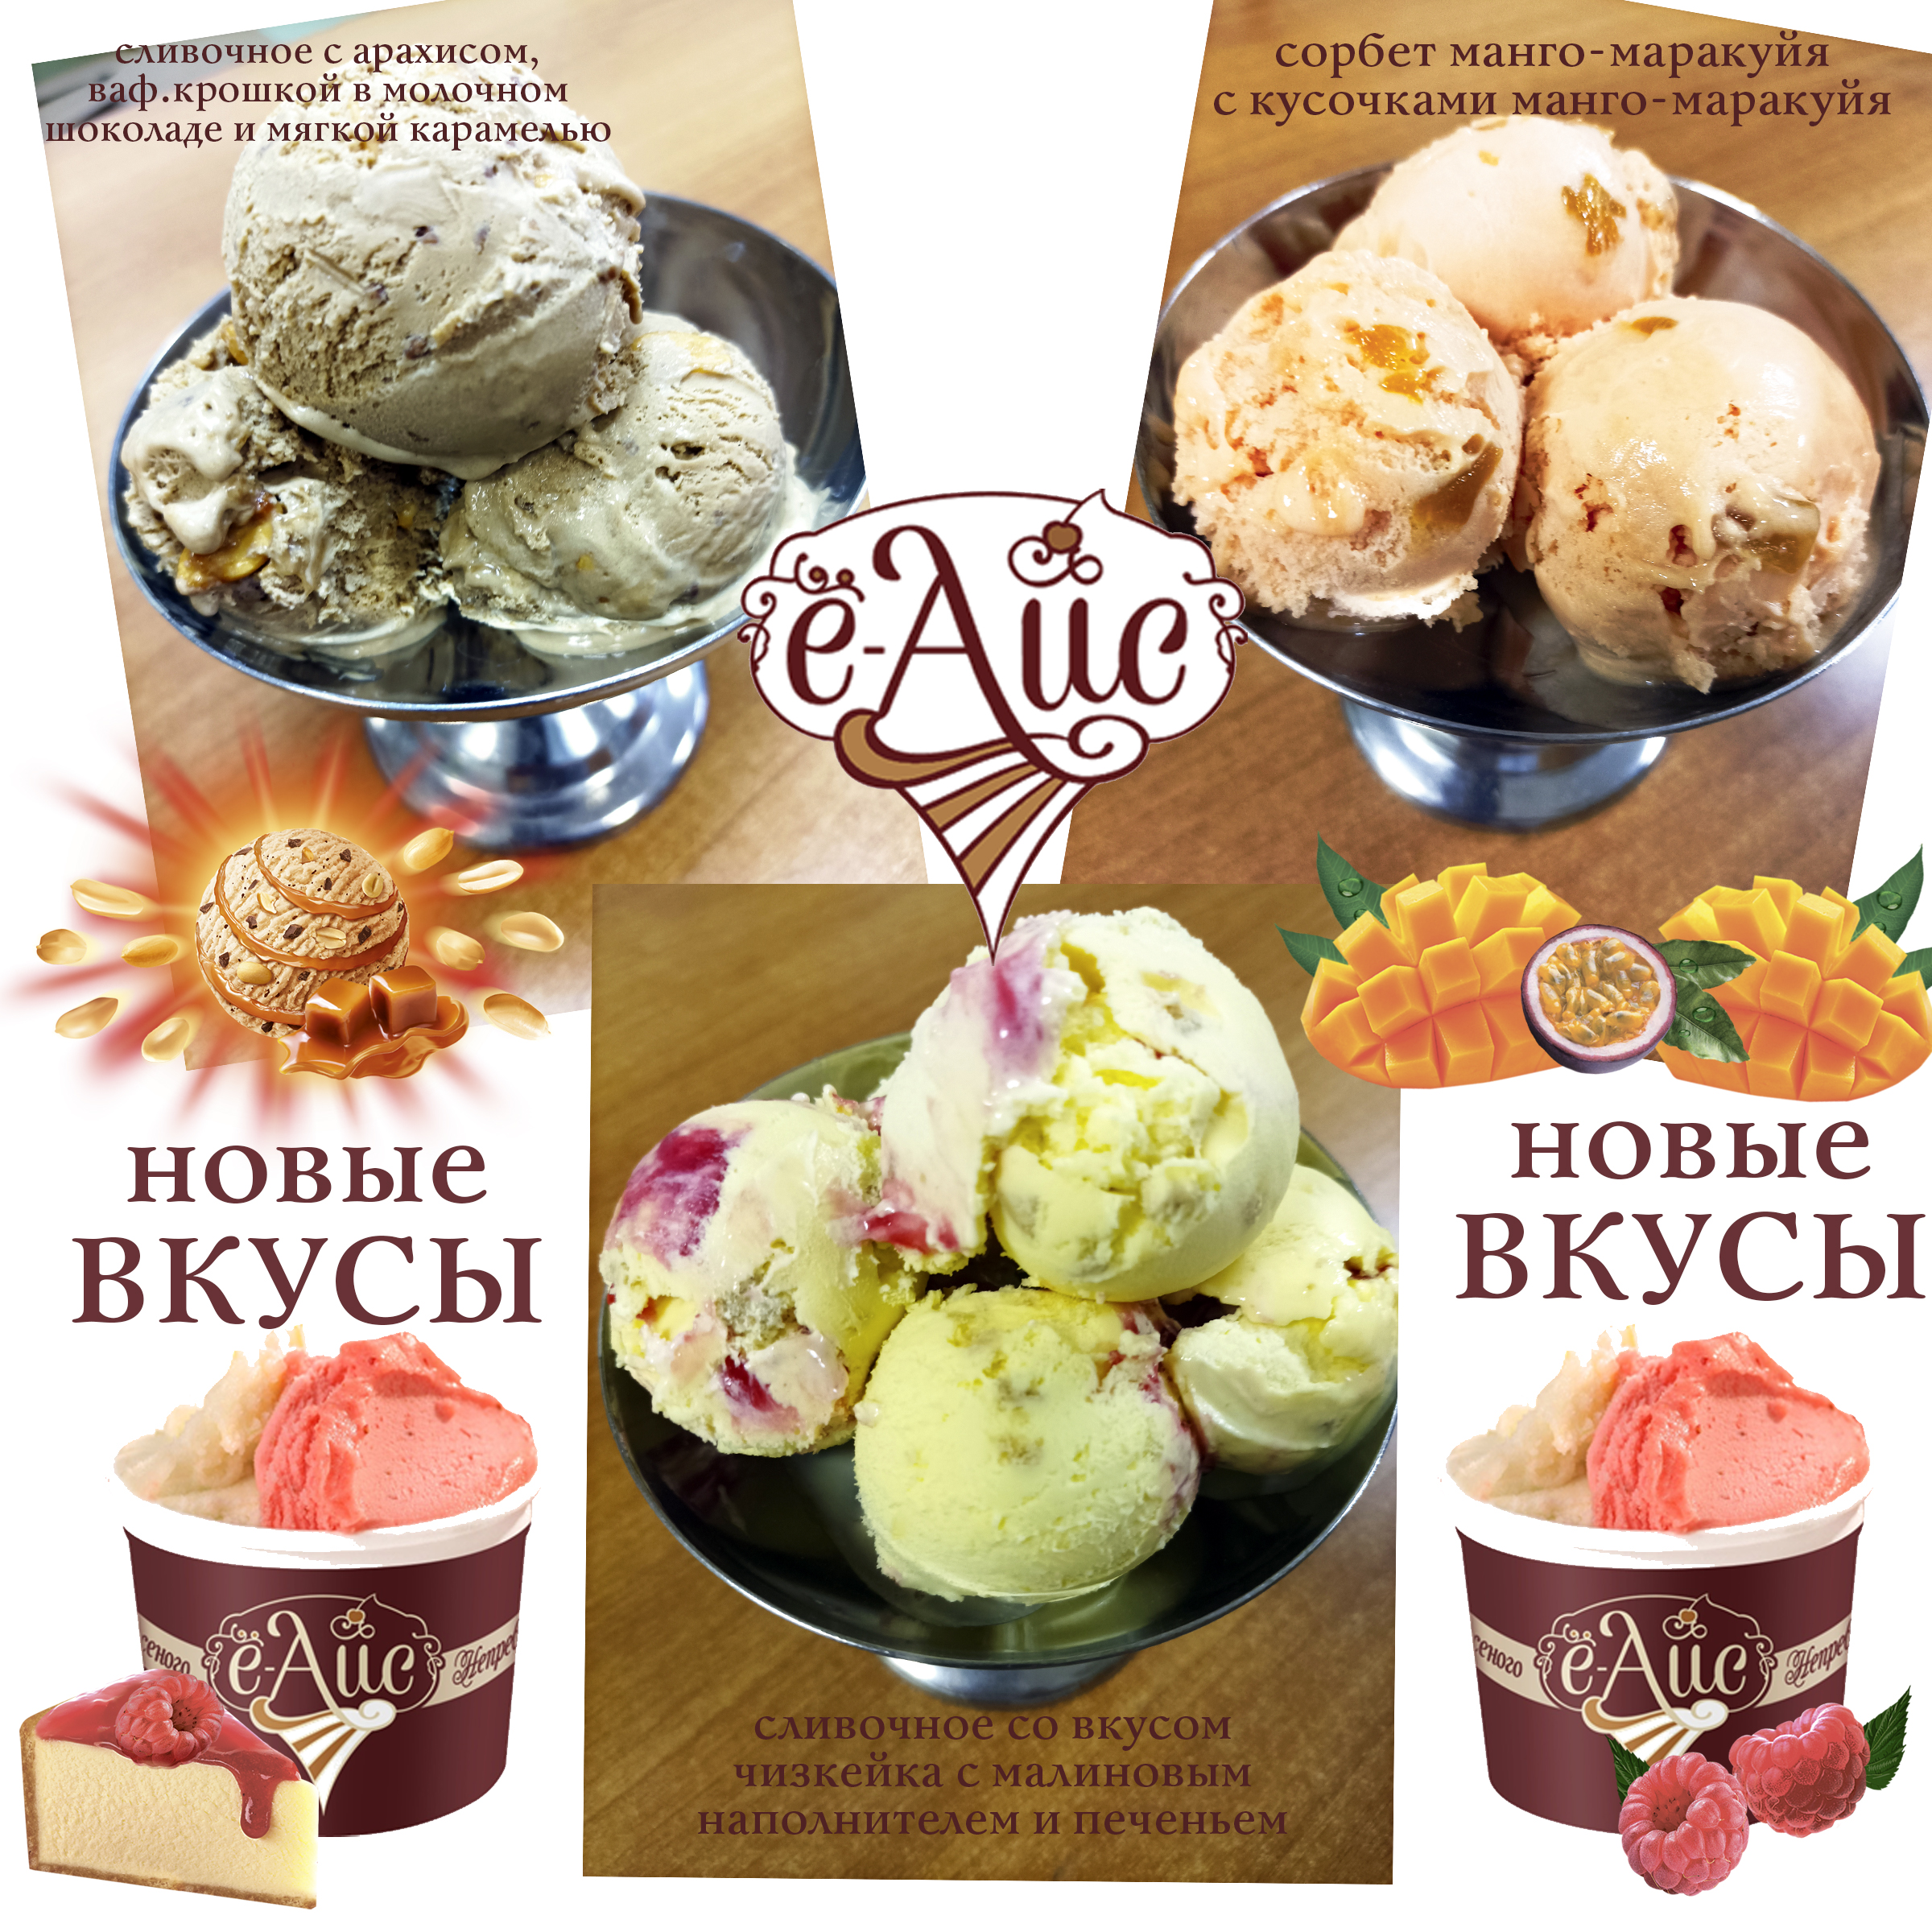 В линейке мороженого Ё-айс сразу три новых вкуса!